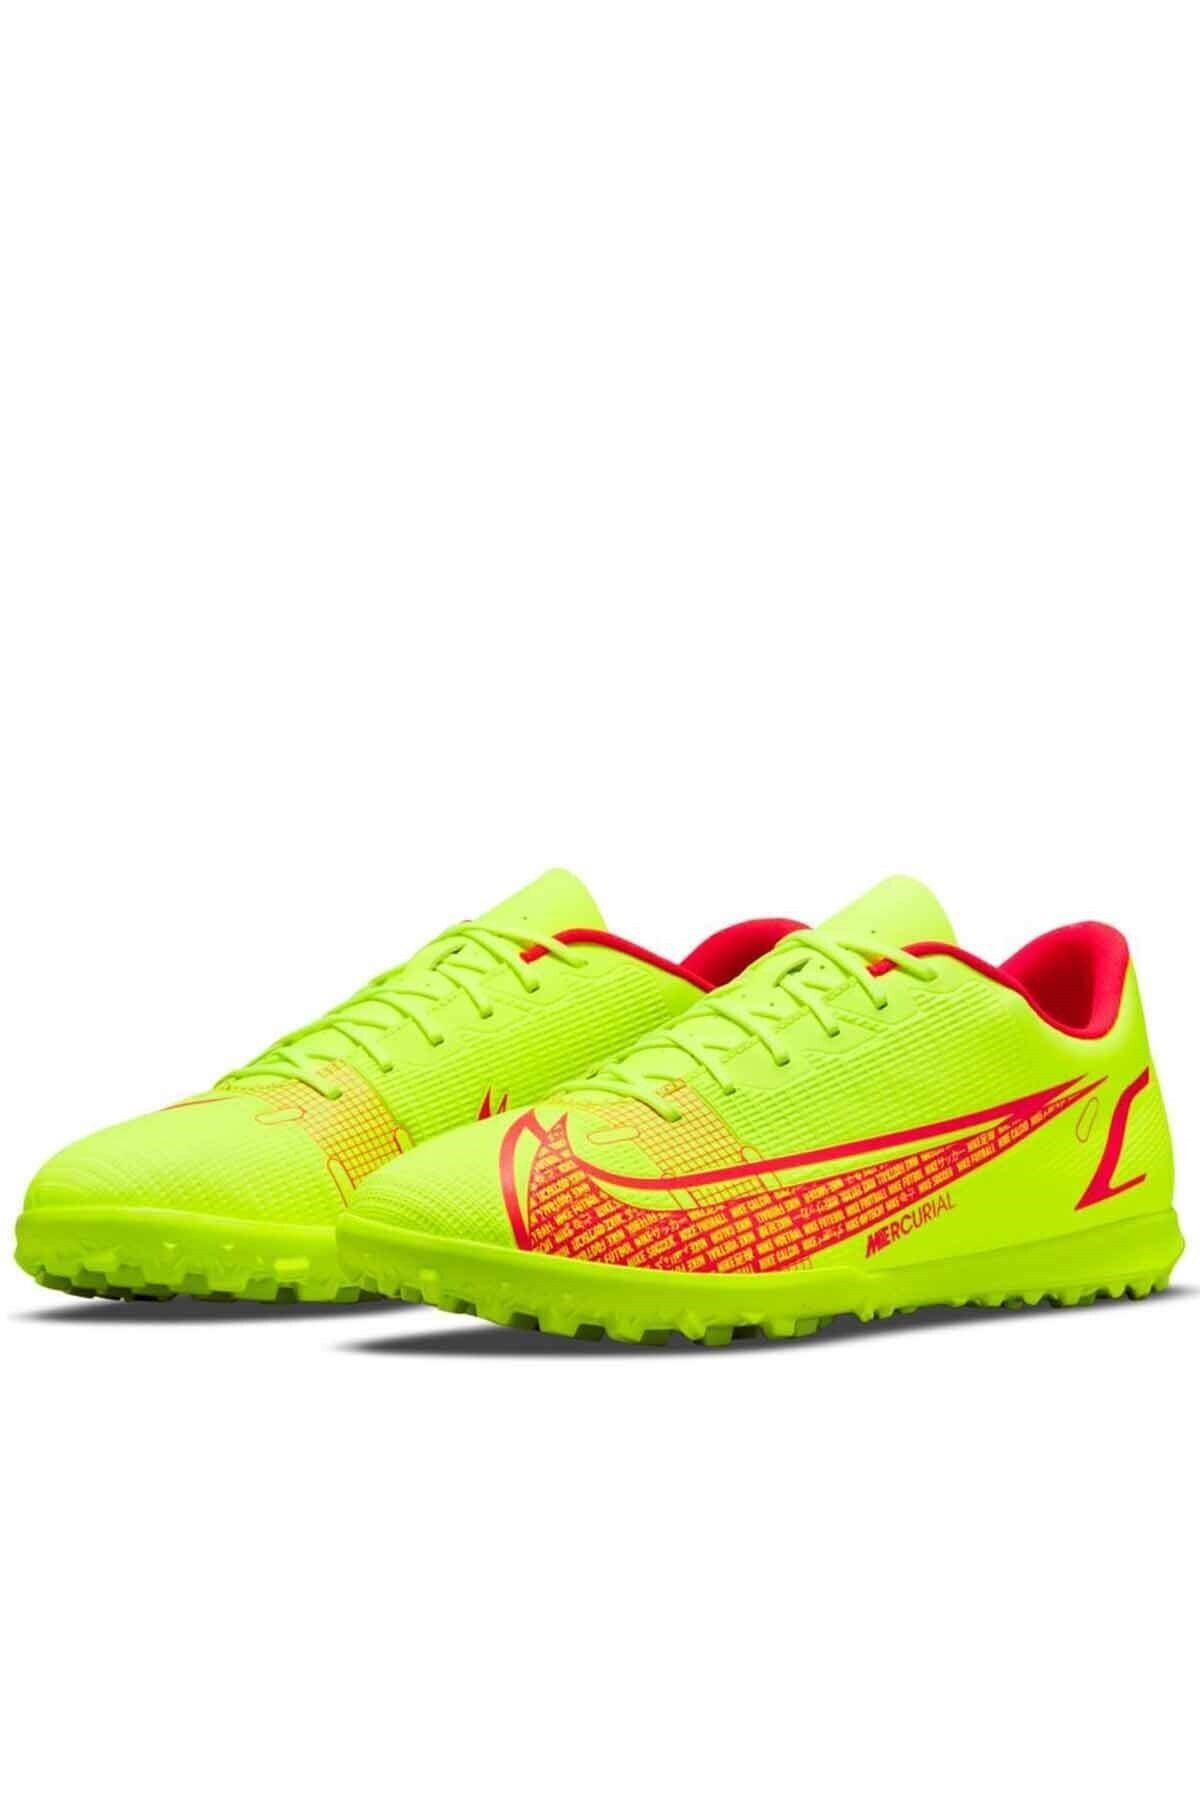 Nike Vapor 14 Club Tf Erkek Halı Saha Ayakkabı Cv0985 760